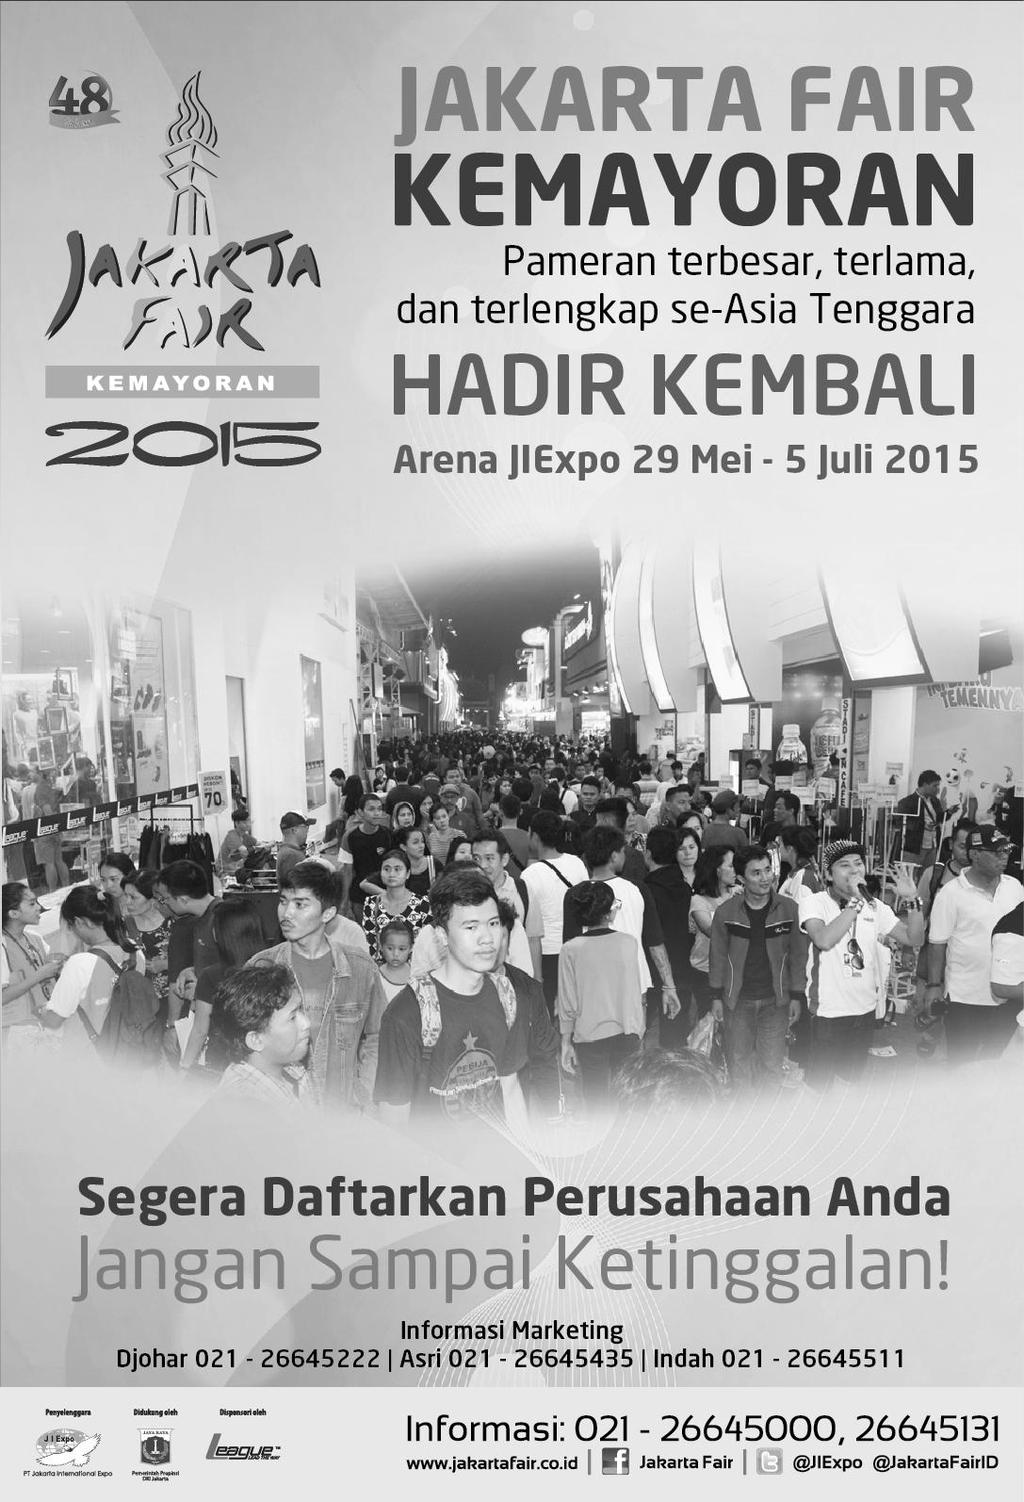 Jakarta Fair 2015